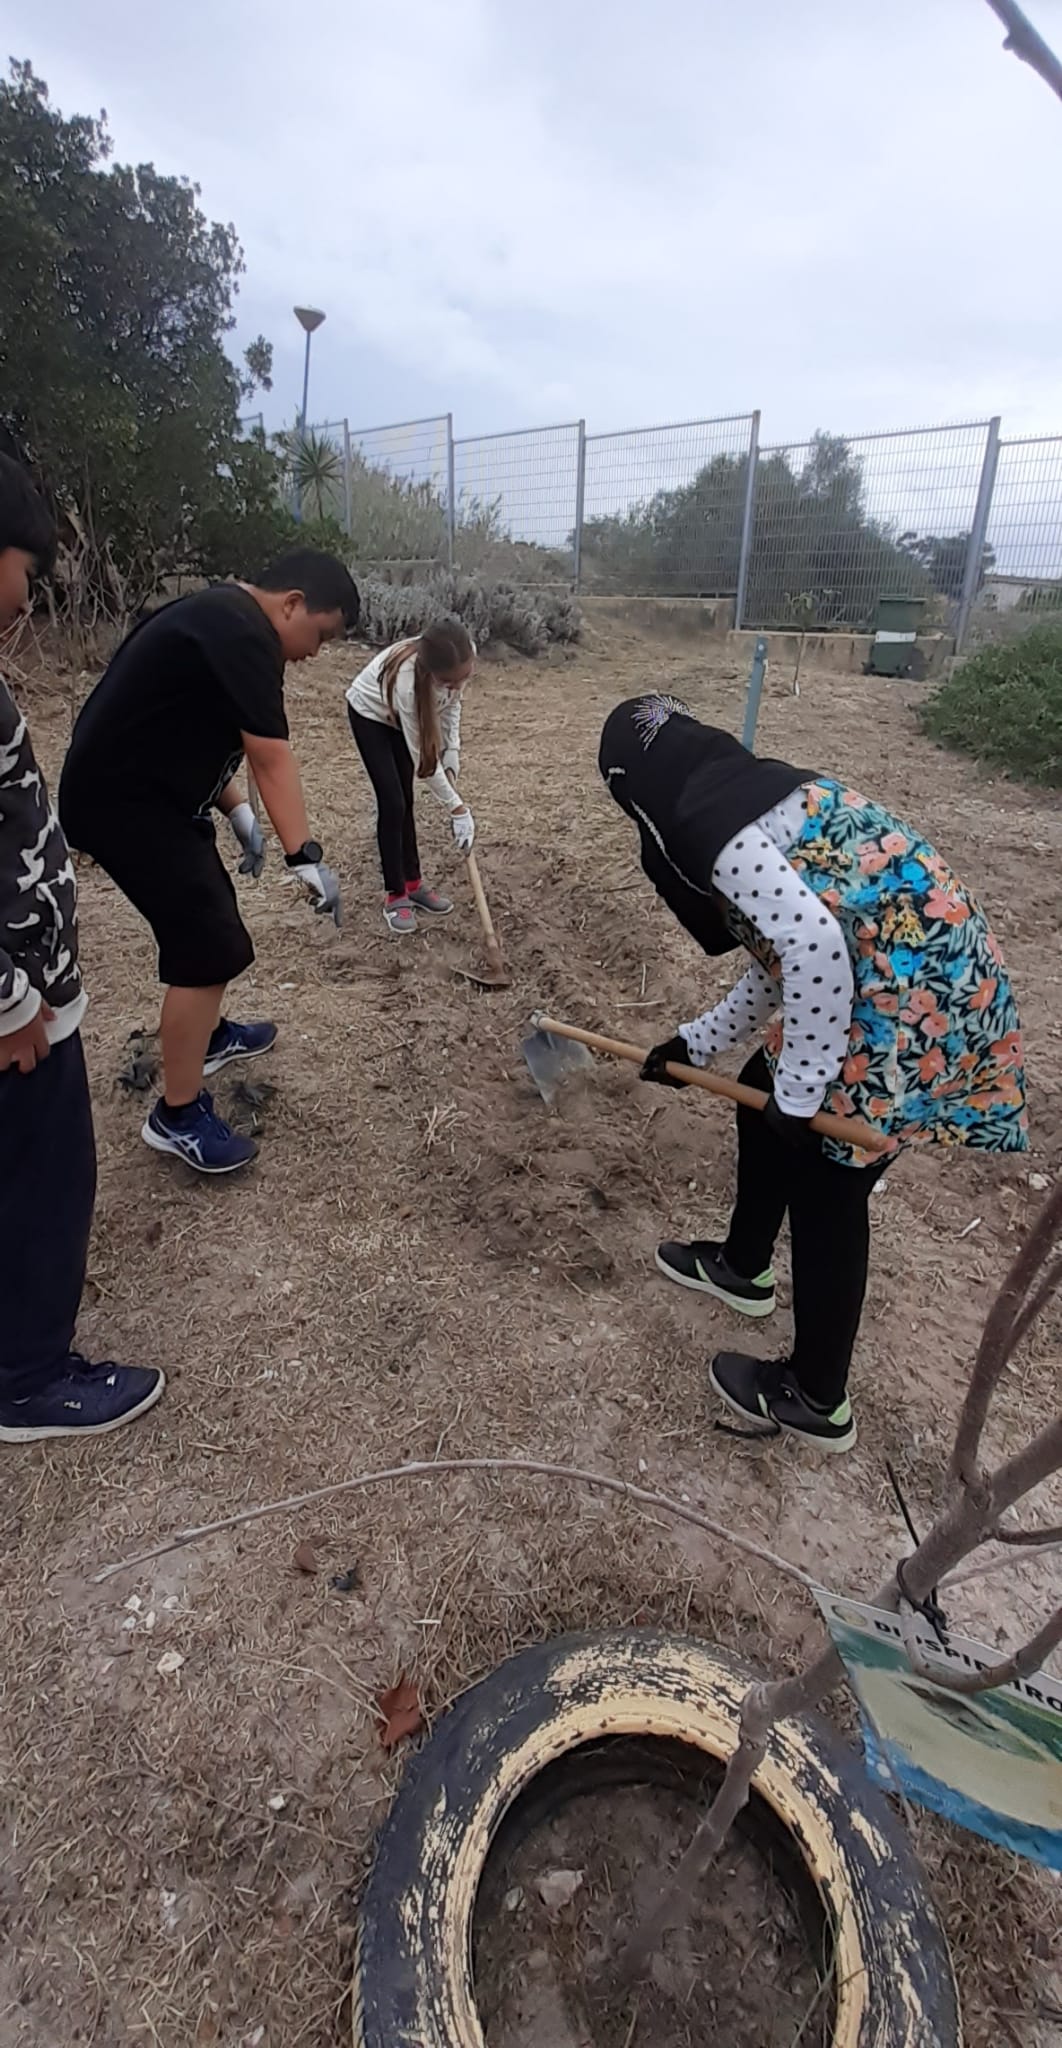 Com as ferramentas (enxadas) os alunos retiram as ervas daninhas presentes no solo.